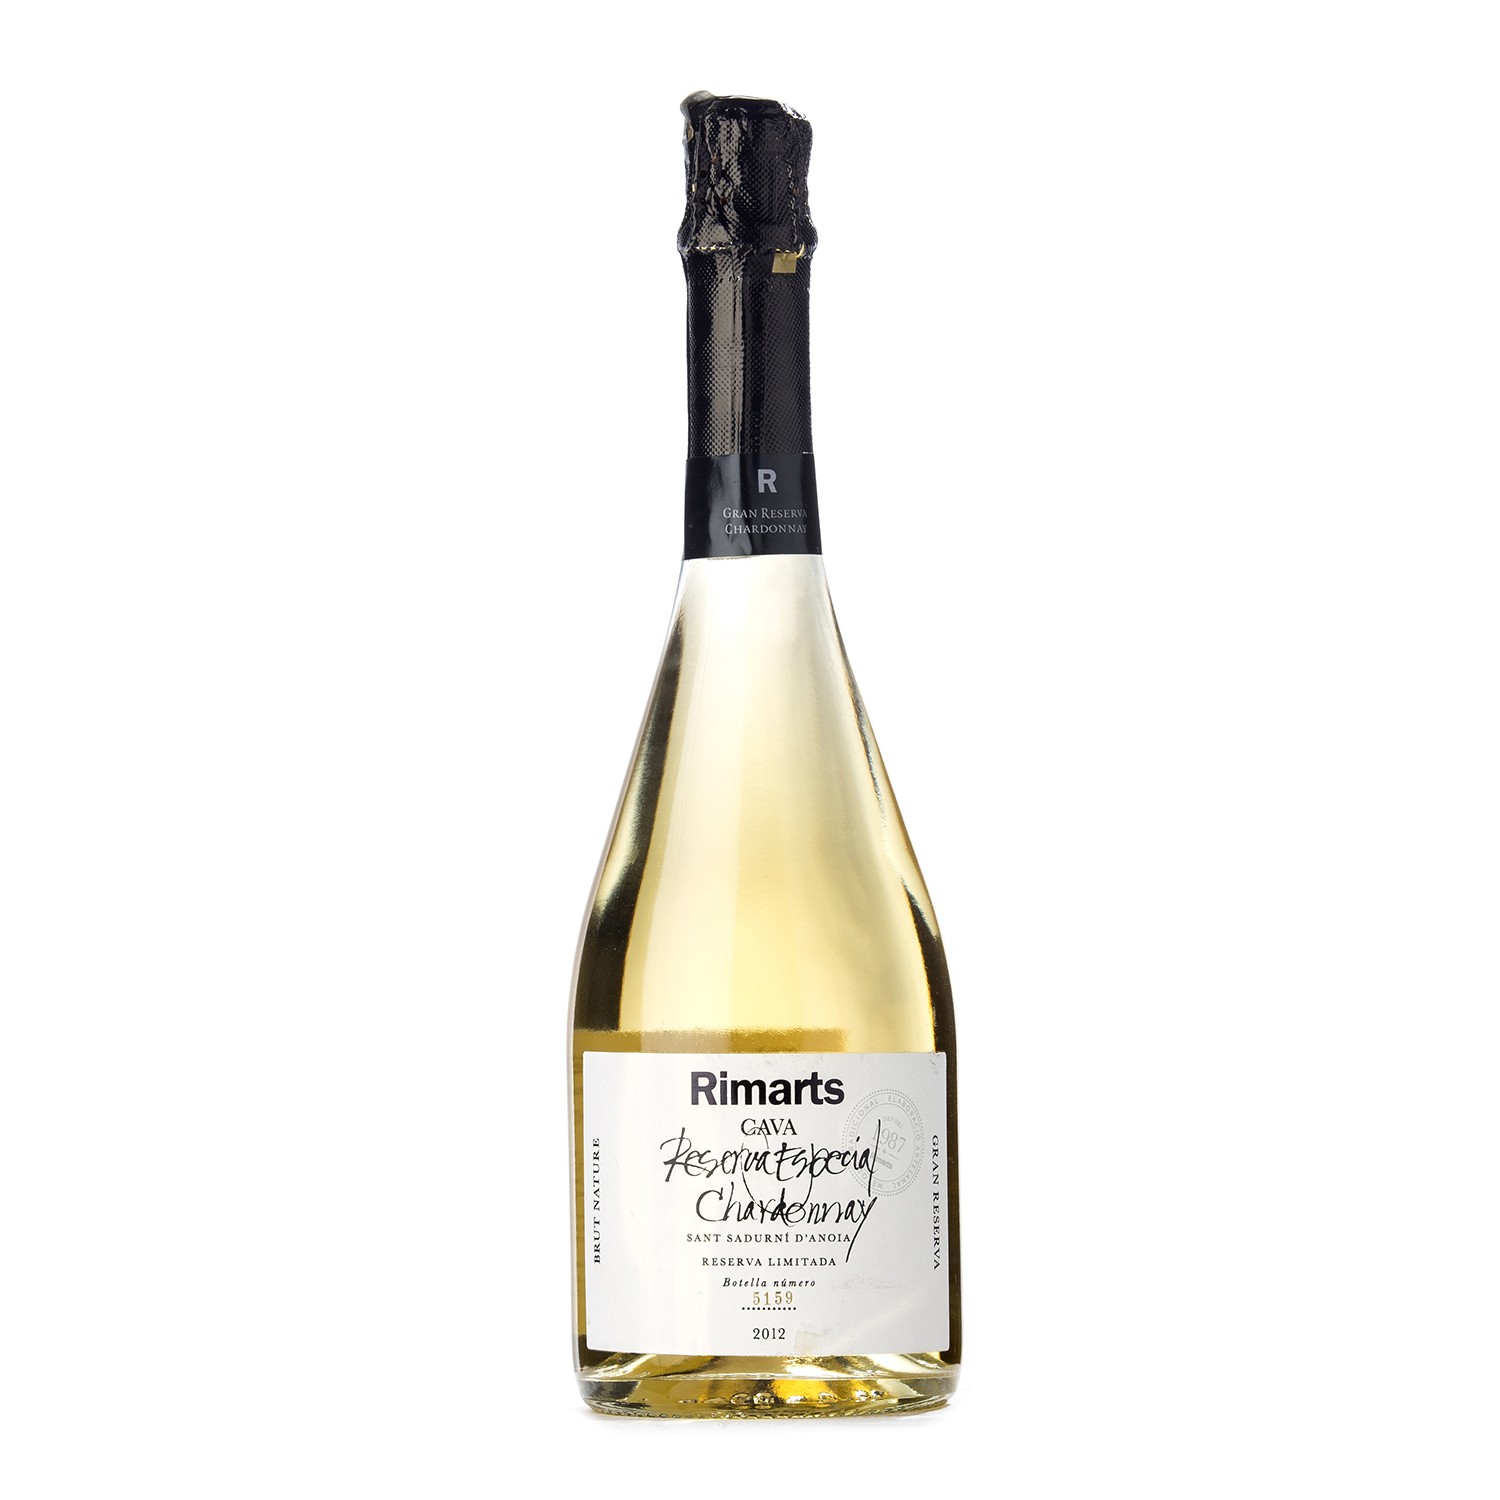 Rimarts Reserva Especial Chardonnay